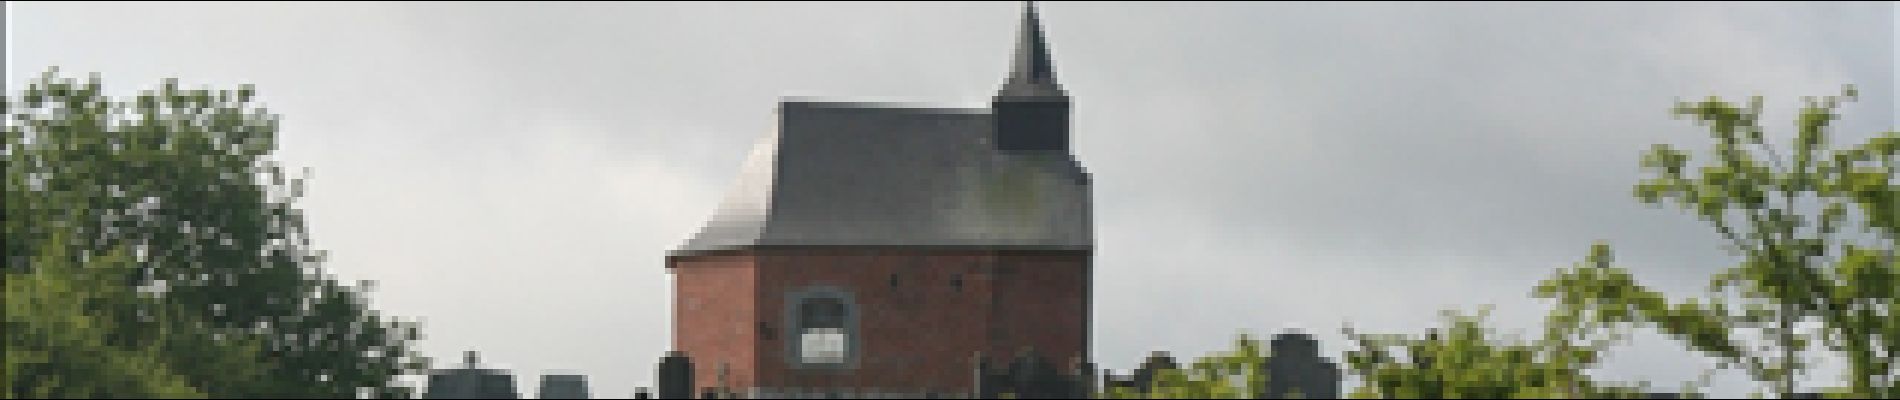 POI Houyet - Kapel Onze-Lieve-Vrouwe van Gratië - Photo